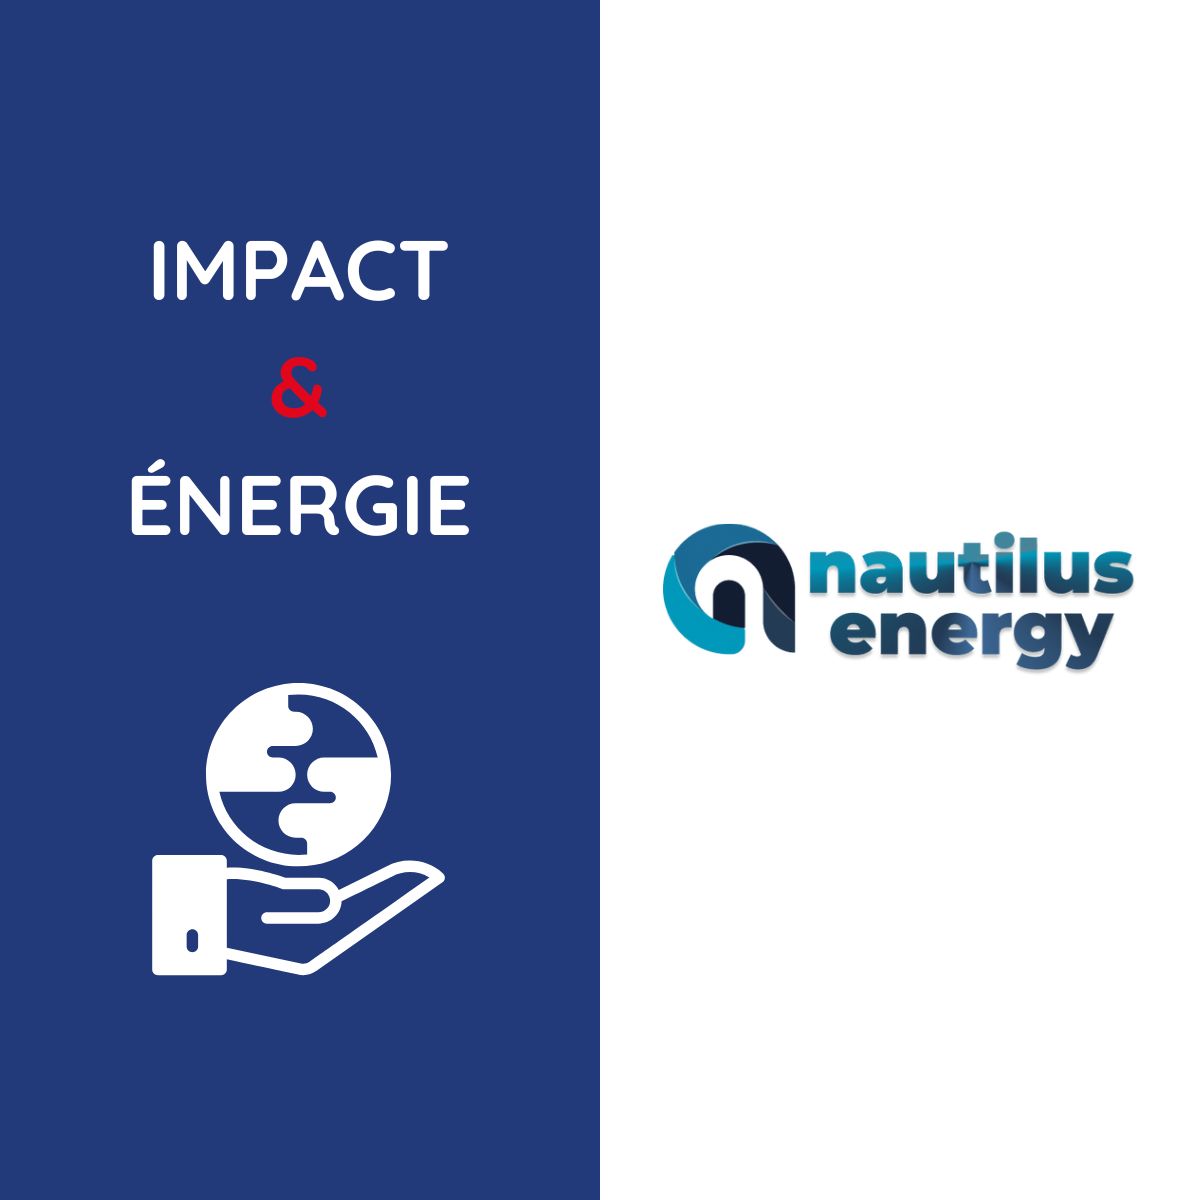 impact energie nautilus